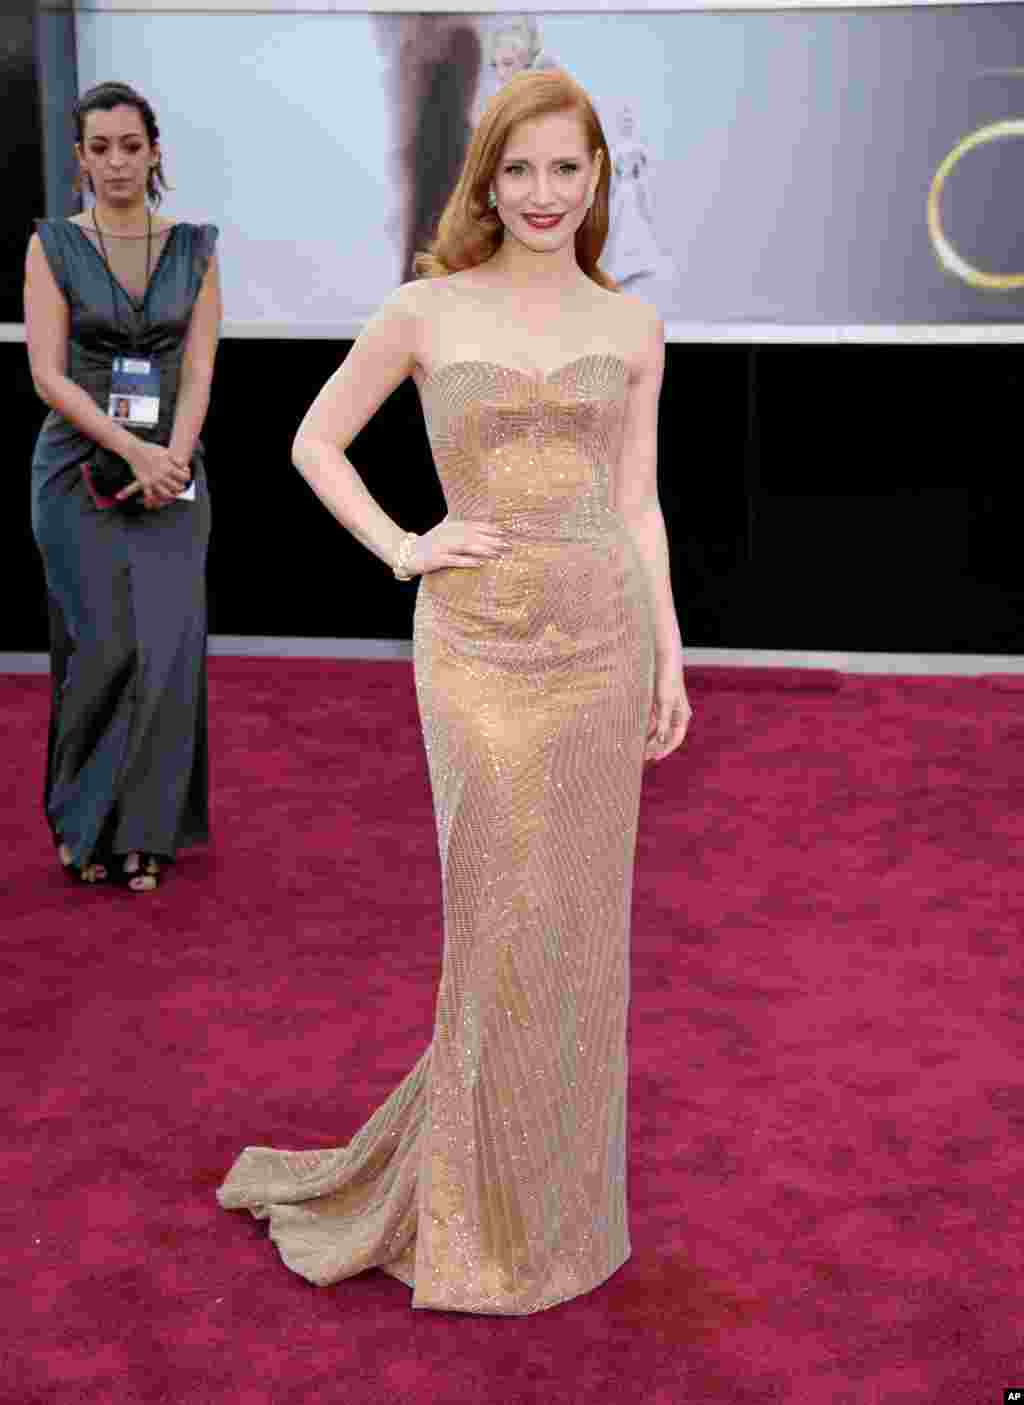  جسیکا چستین، بازیگر فیلم سی دقیقه پس از نیمه شب، نامزد دریافت جایزه اسکار بهترین بازیگر زن، روی فرش قرمز.